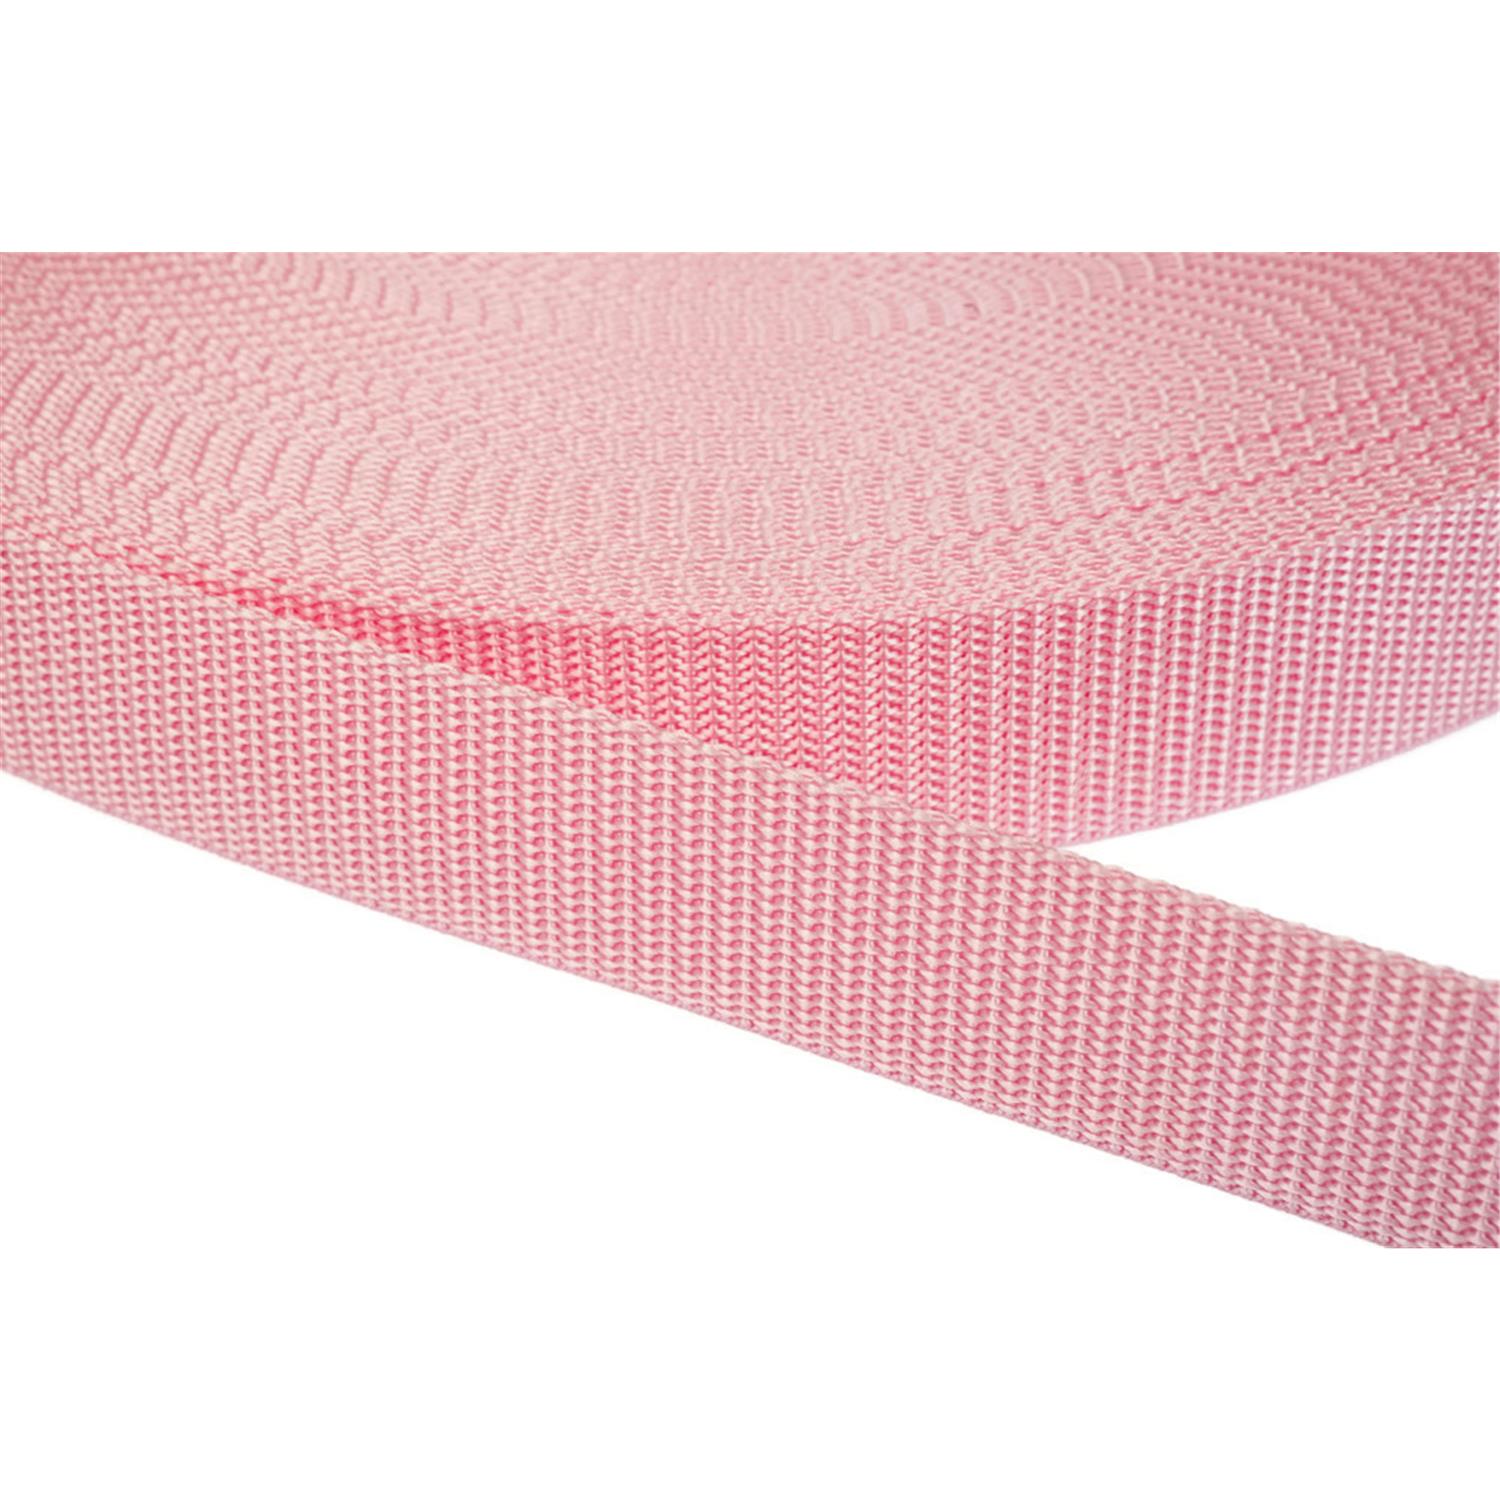 Gurtband 40mm breit aus Polypropylen in 41 Farben 12 - rosa 6 Meter